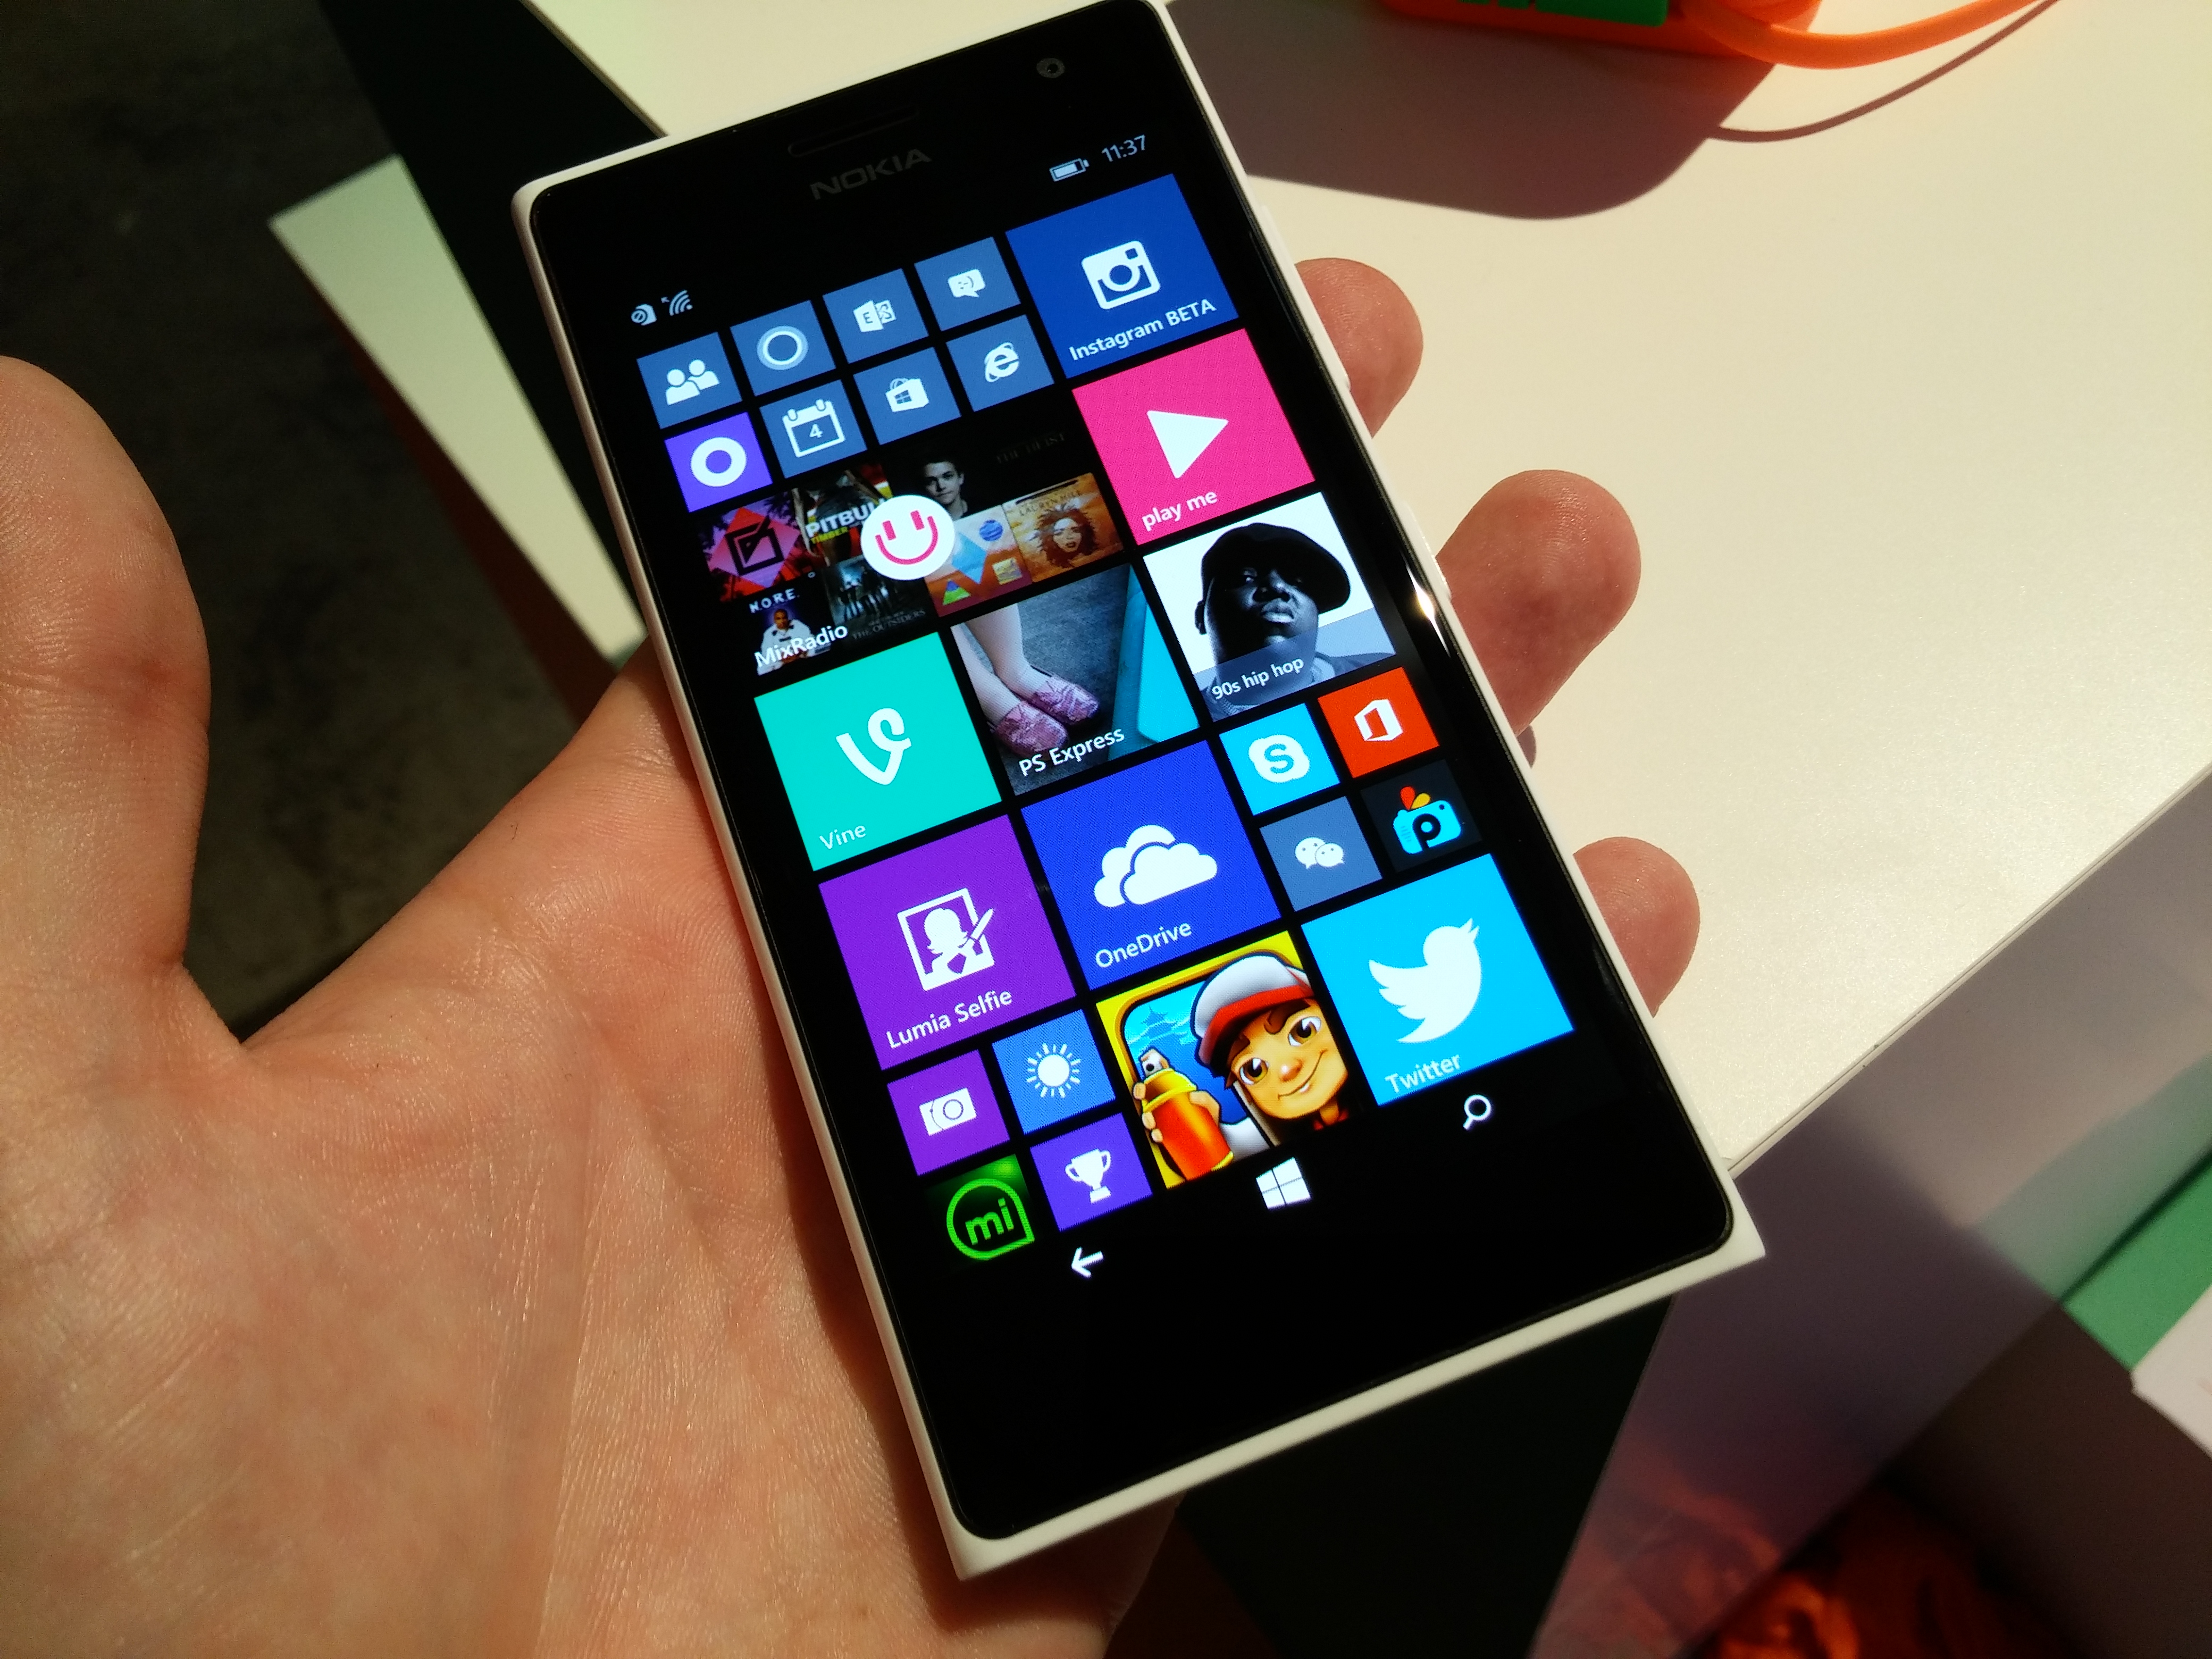  Nokia Lumia 730